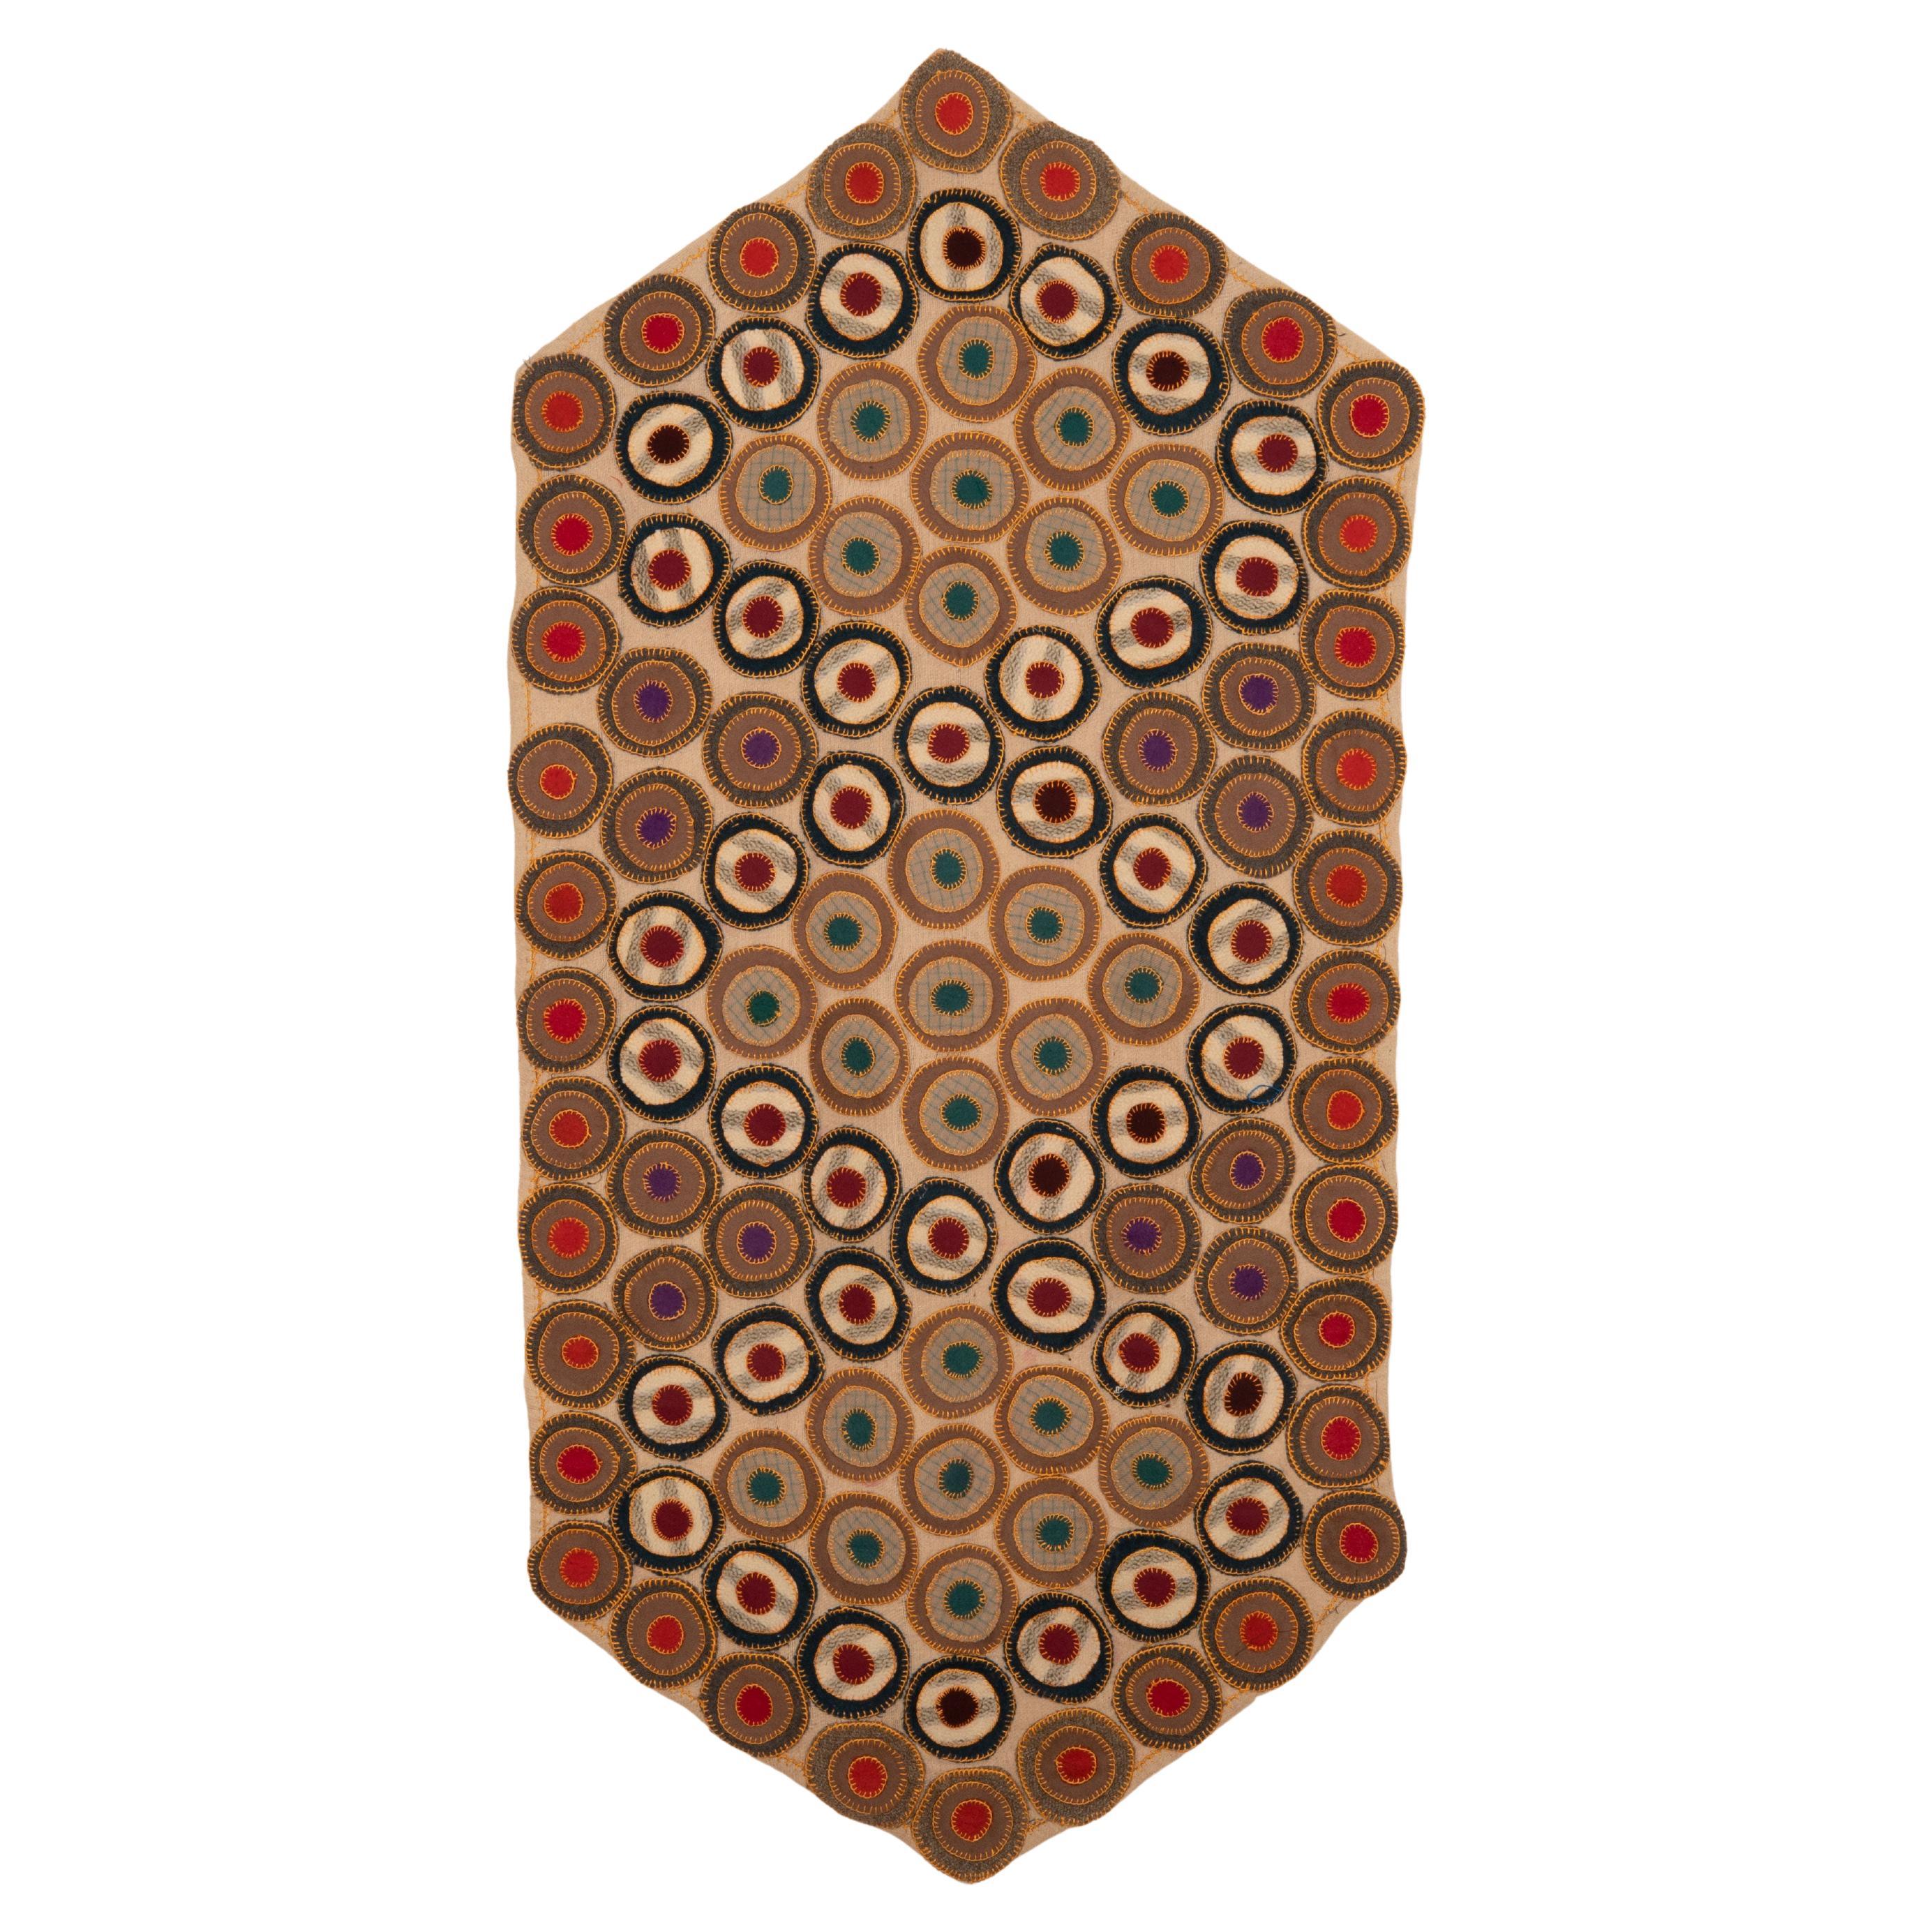 Amerikanischer Penny-Teppich, 1930/40er-Jahre